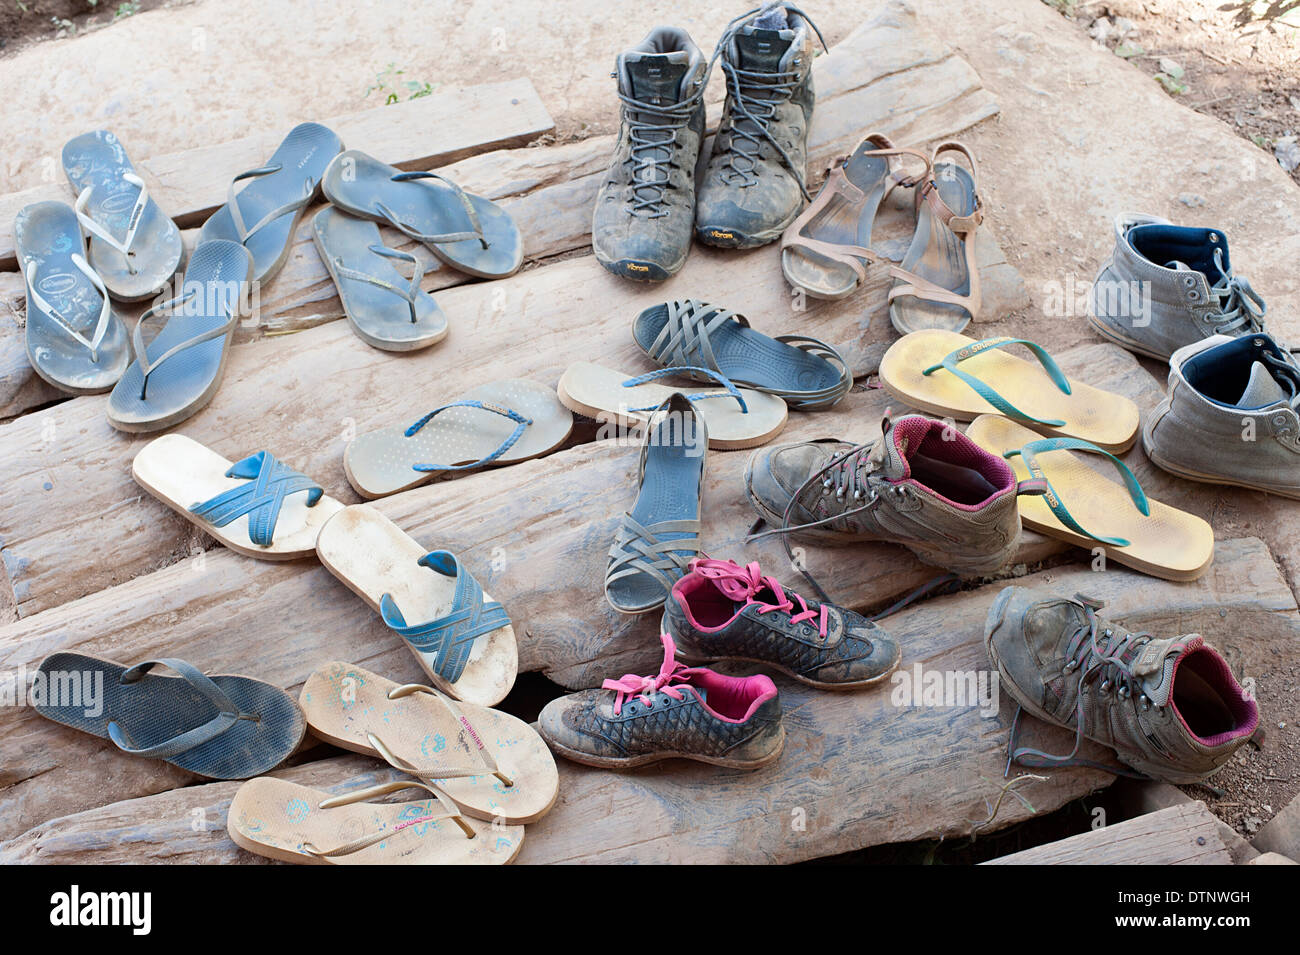 Chaussures retirées de pieds avant d'entrer dans l'hébergement dans le Nord de la Thaïlande. Banque D'Images